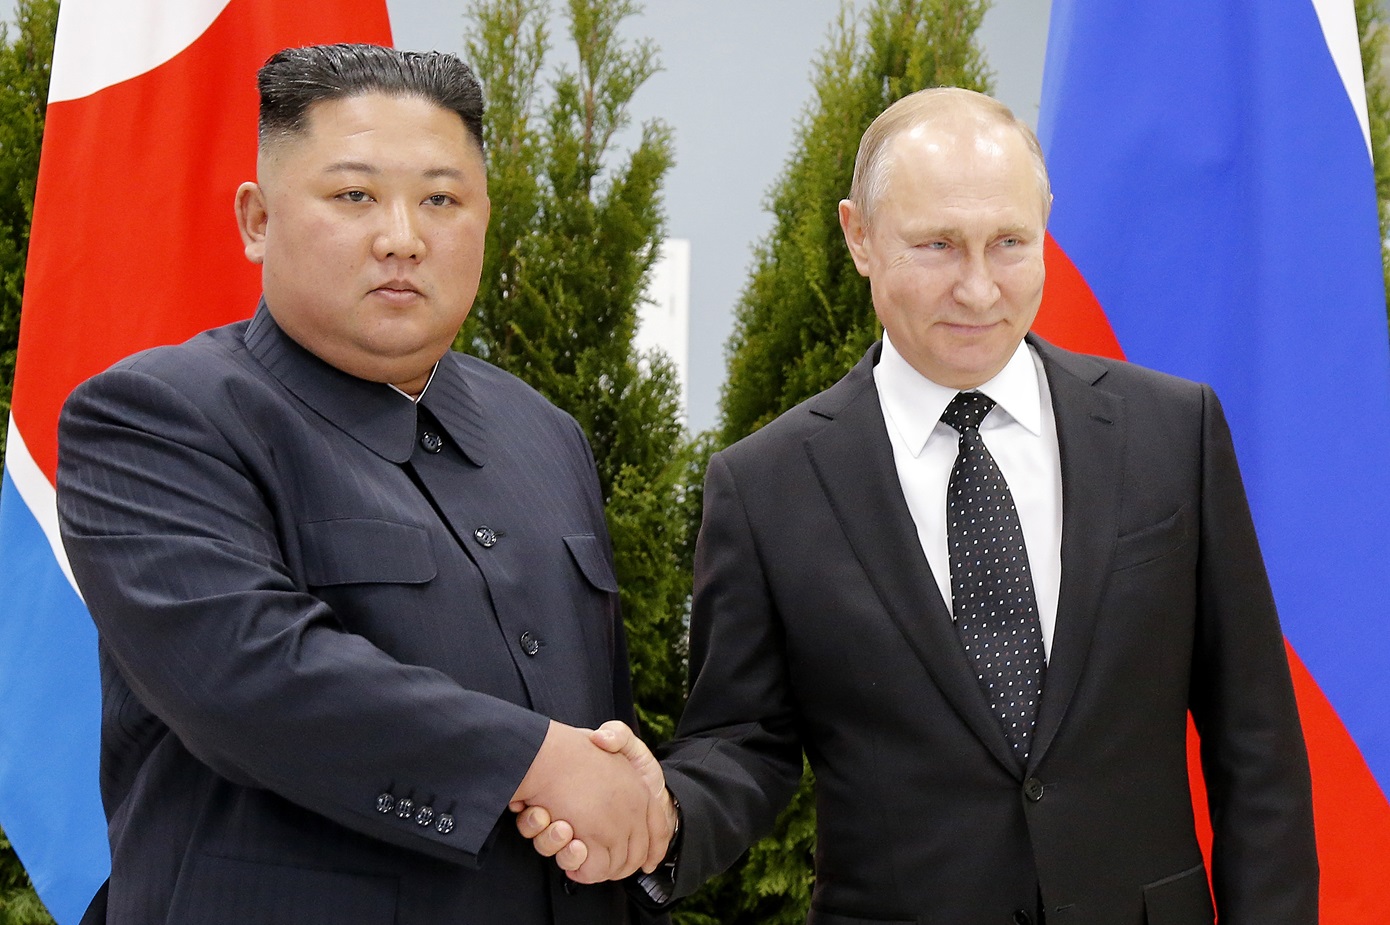 Ο Βλαντίμιρ Πούτιν και ο Κιμ Γιονγκ Ουν αναμένεται να υπογράψουν συμφωνία «στρατηγικής συνεργασίας»